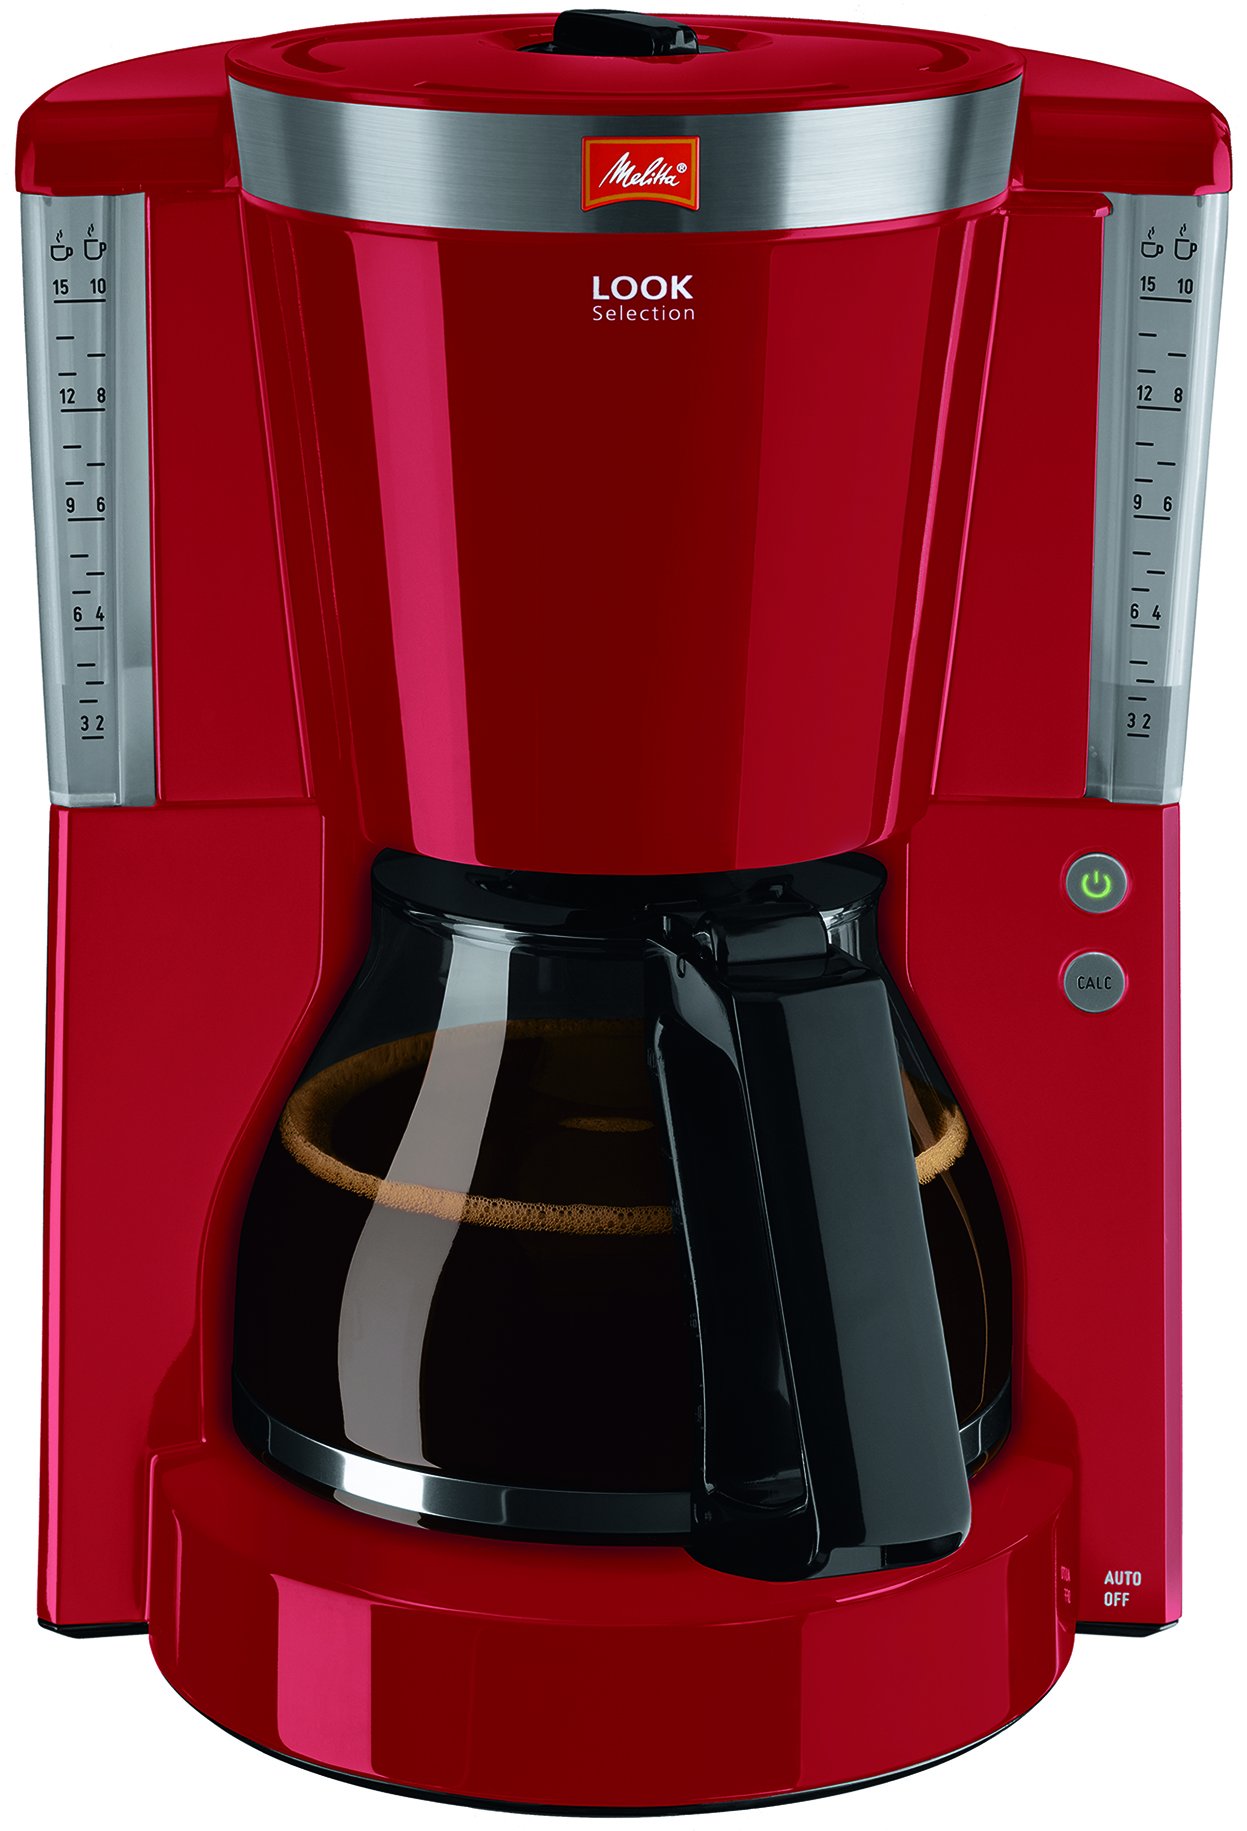 Melitta Look Selection - Filterkaffeemaschine - mit Glaskanne - Tropfstopp - 10 Tassen - Rot (1011-17)